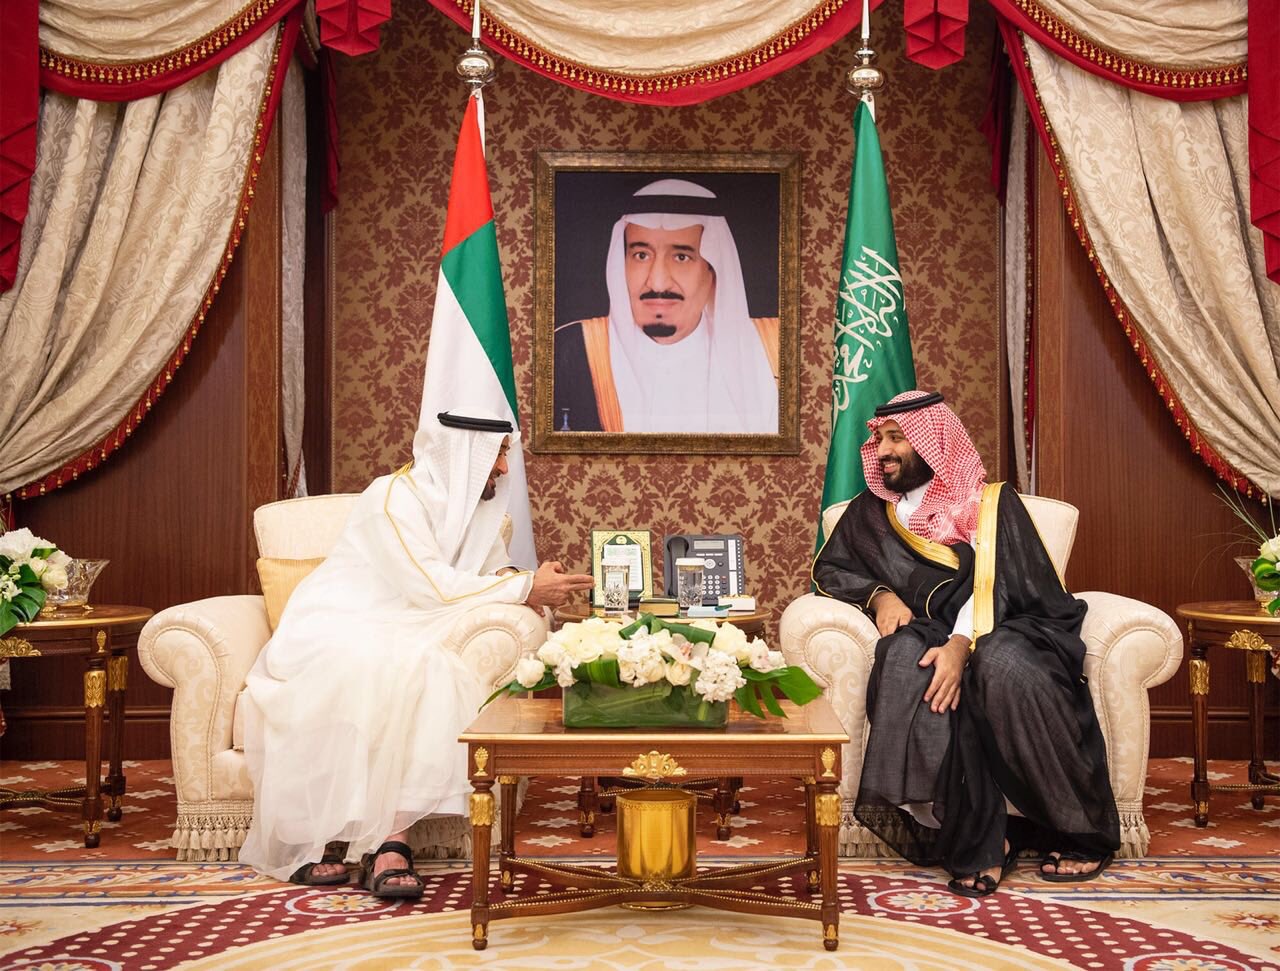 الإمارات و السعودية تعلنان عن رؤية مشتركة للتكامل عبر 44 مشروعاً استراتيجياً مشتركاً